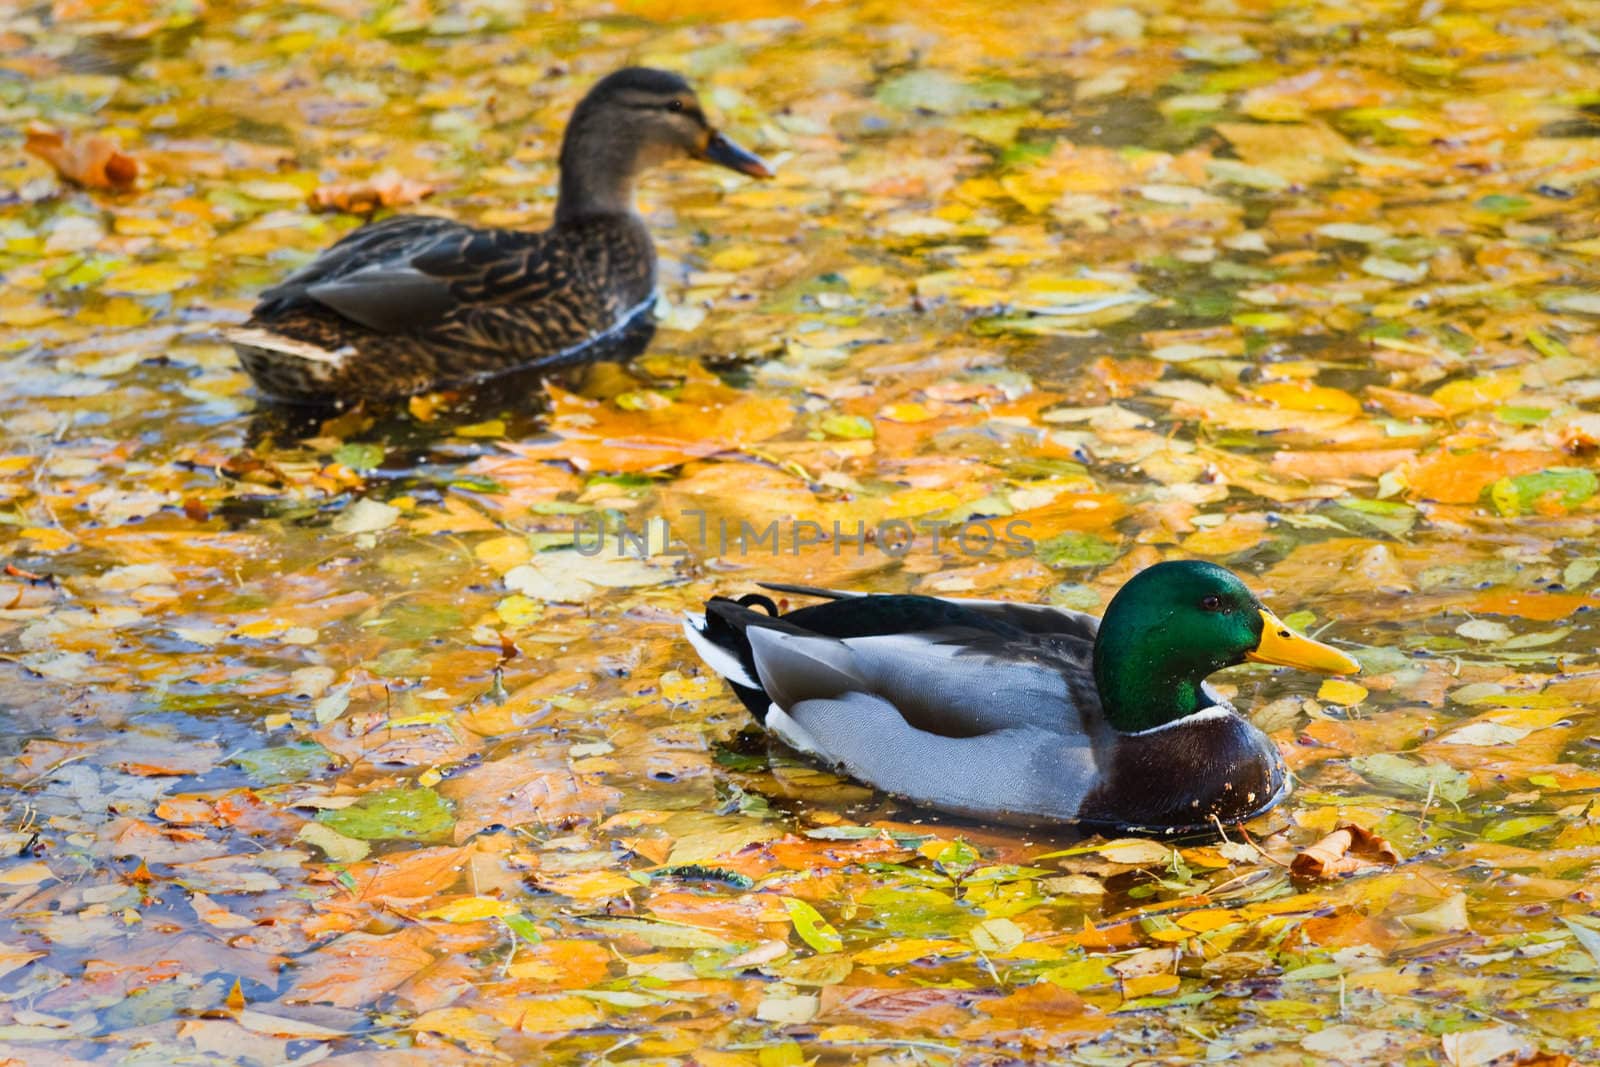 Mallards or Wild Ducks in fall by Colette